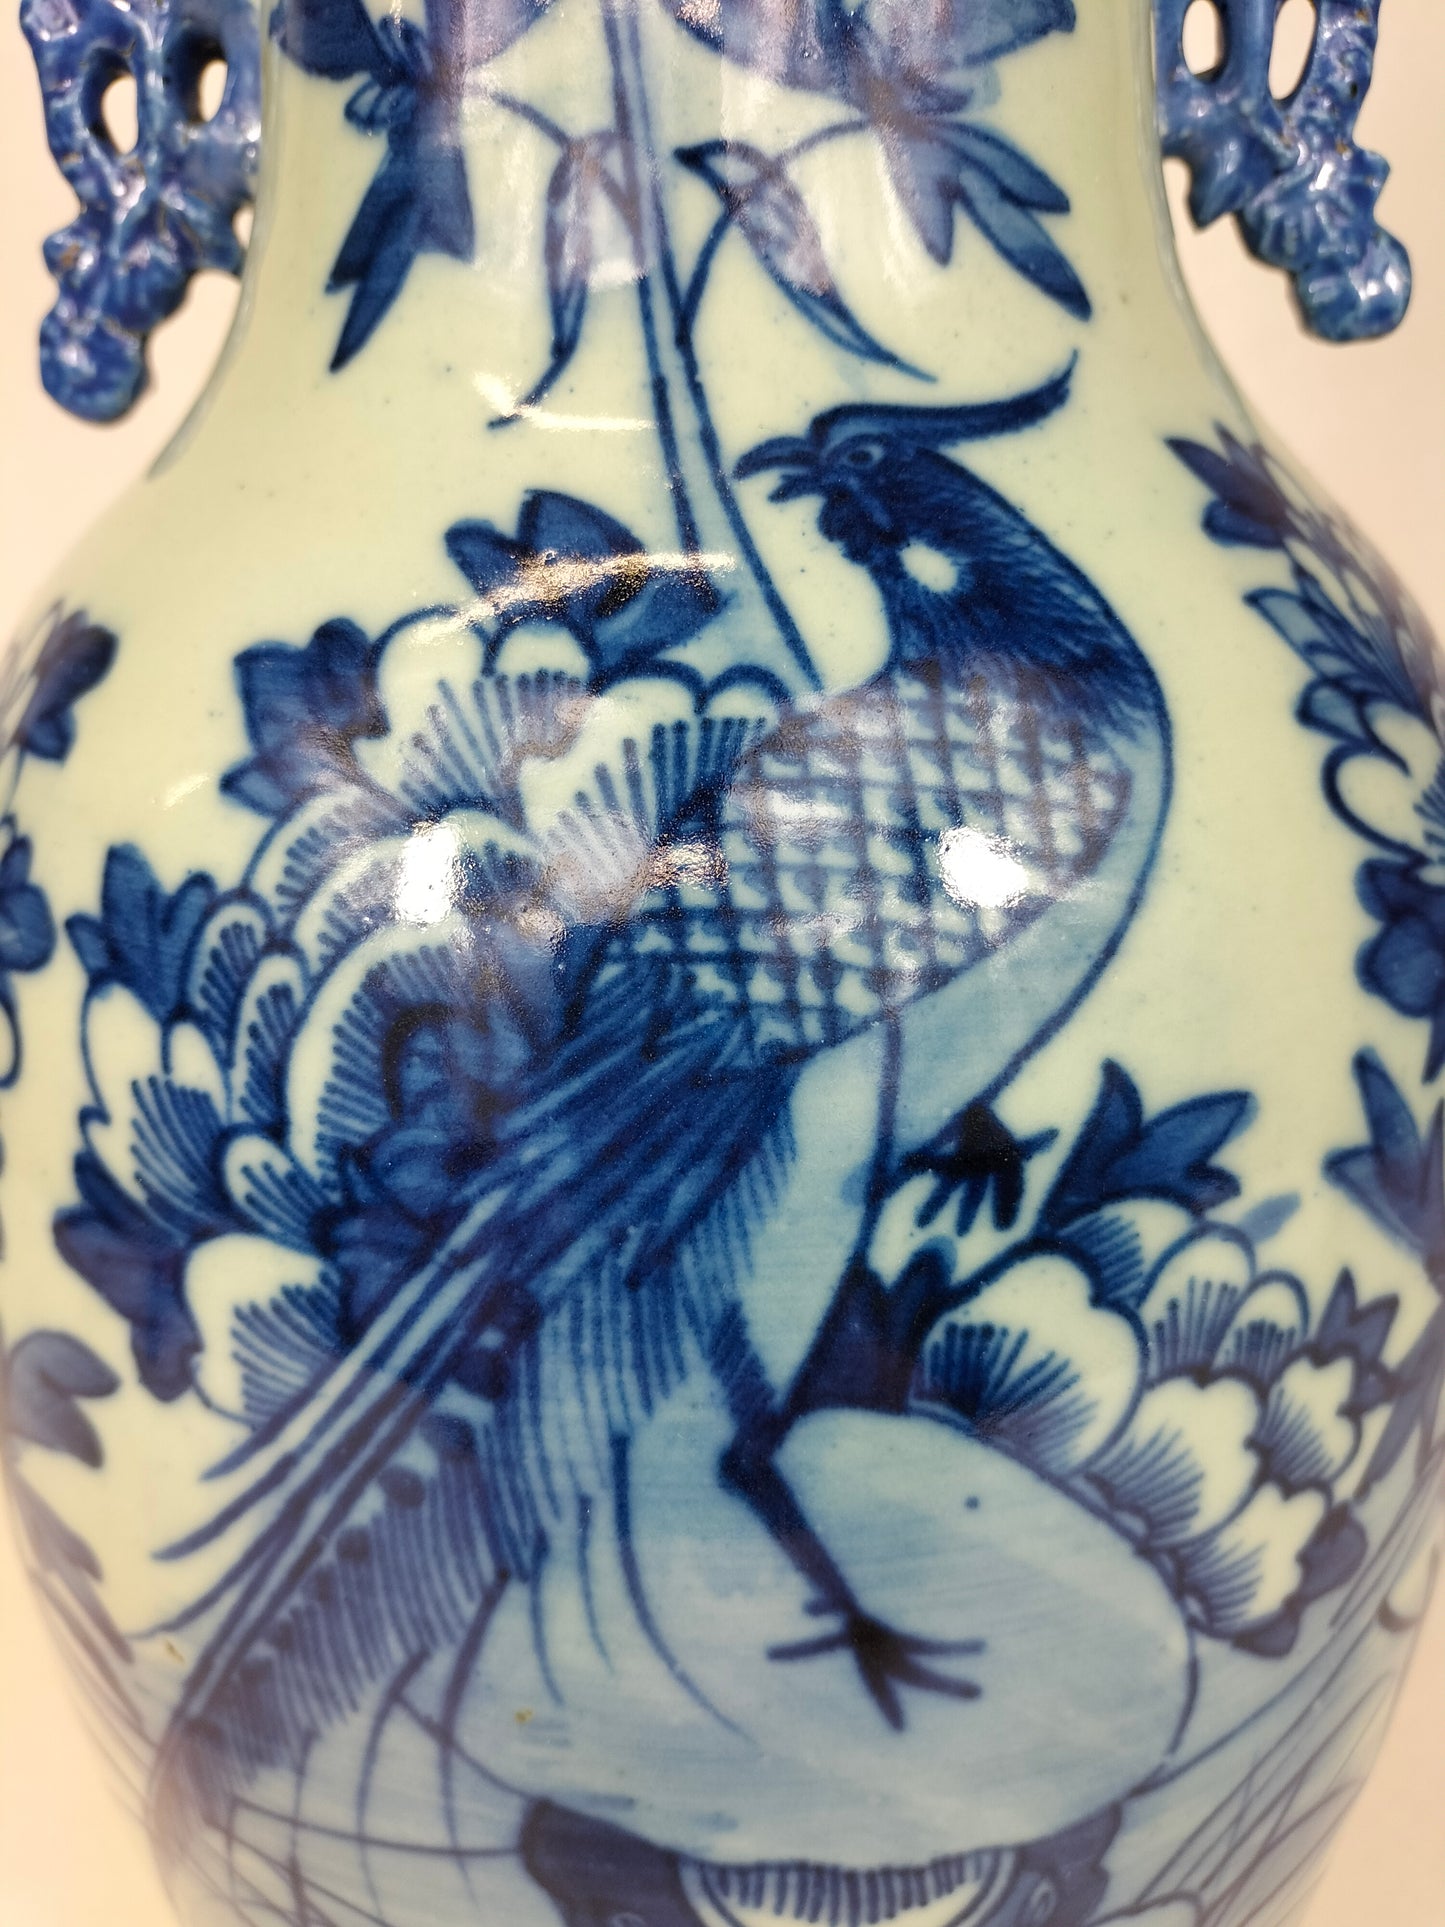 Chiếc bình cổ Trung Quốc được trang trí hình chim và hoa // Nhà Thanh - thế kỷ 19